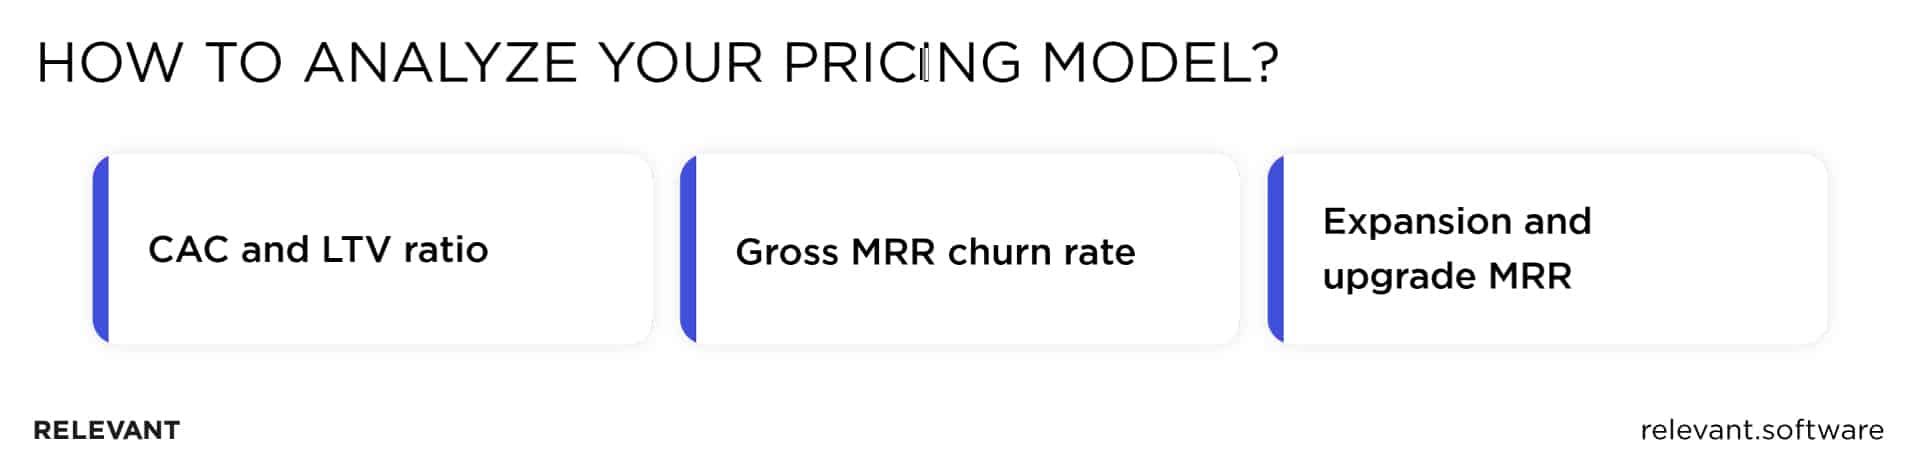 SaaS pricing model